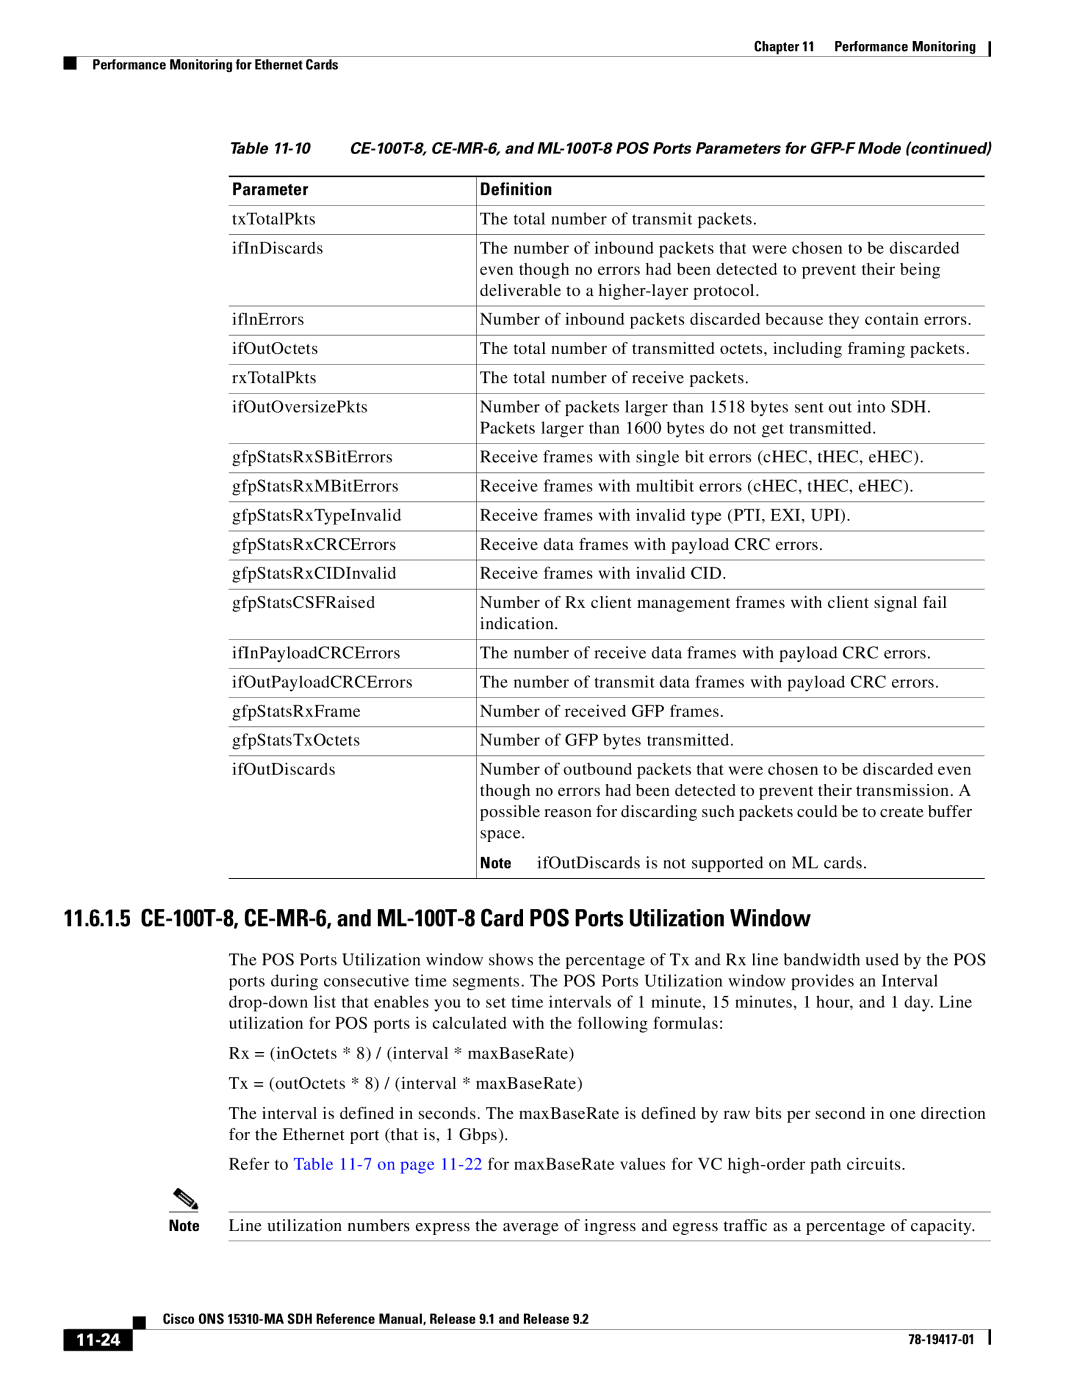 Cisco Systems 15310-MA manual 11-24 